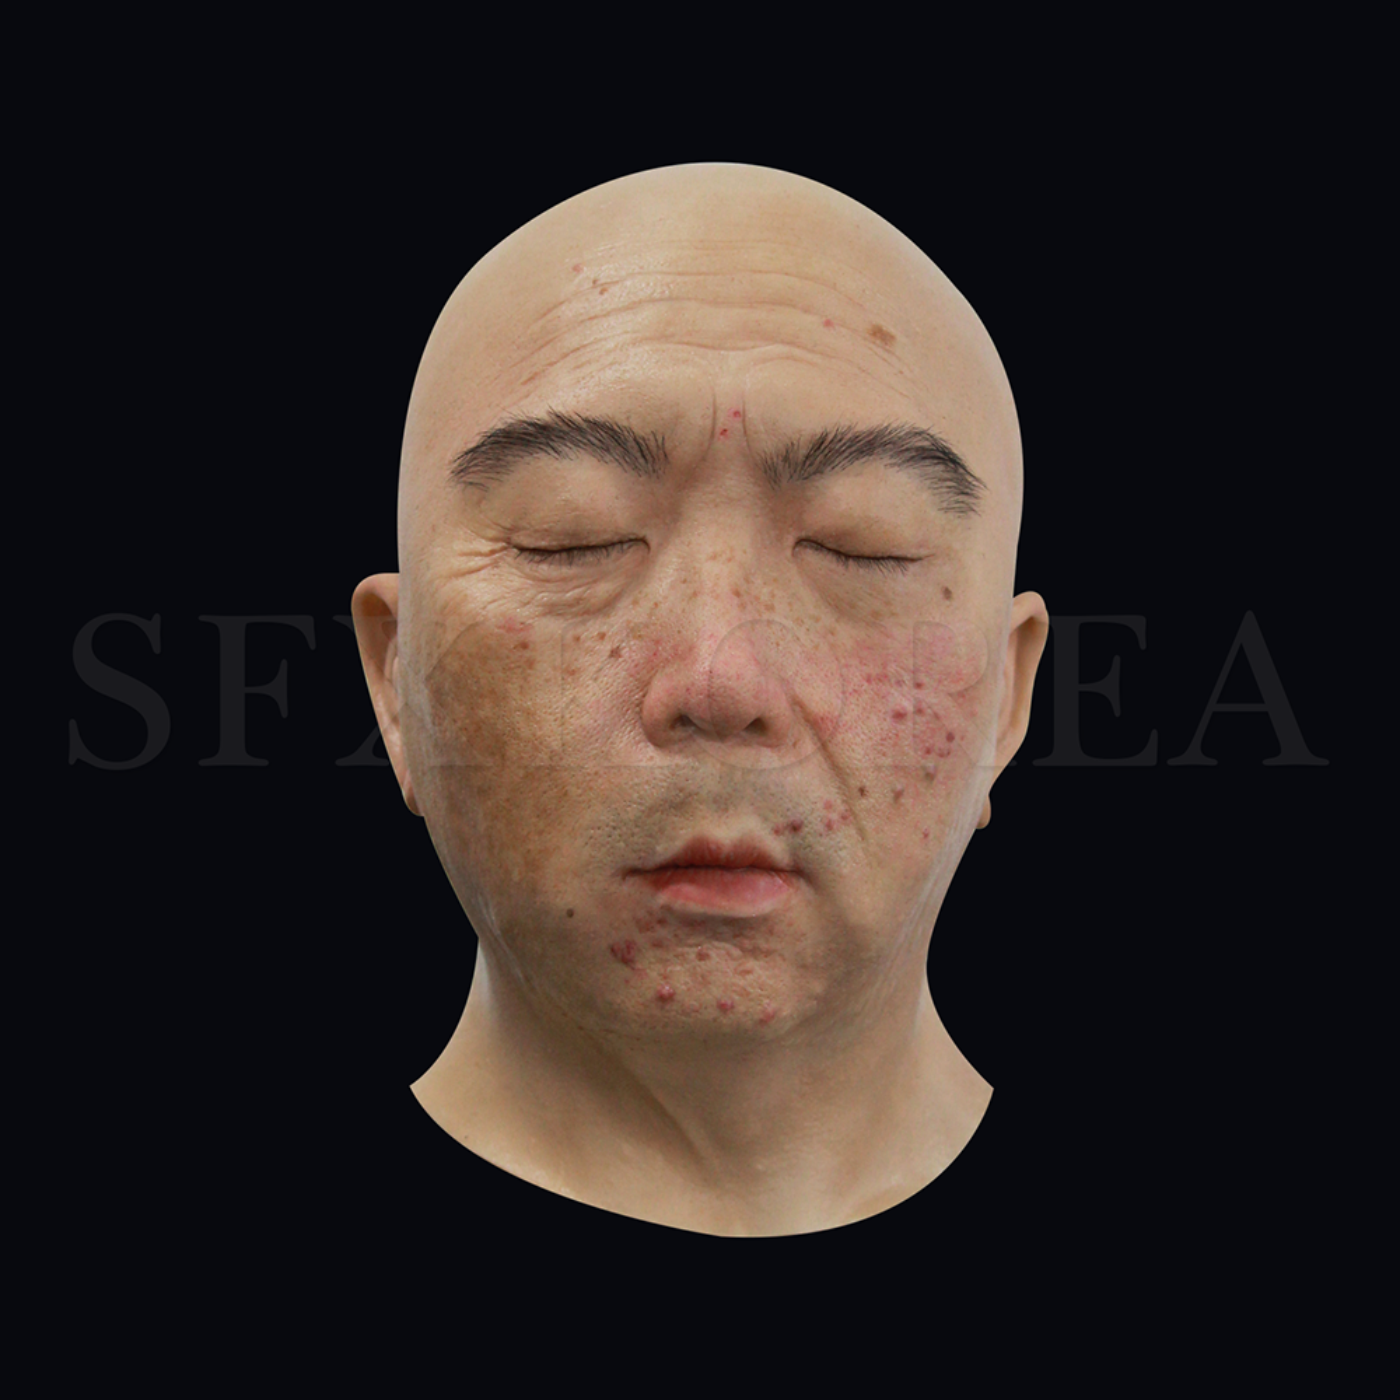 실리콘 머리모형 - 남성2(피부 질환이 표현된 실리콘 얼굴모형)